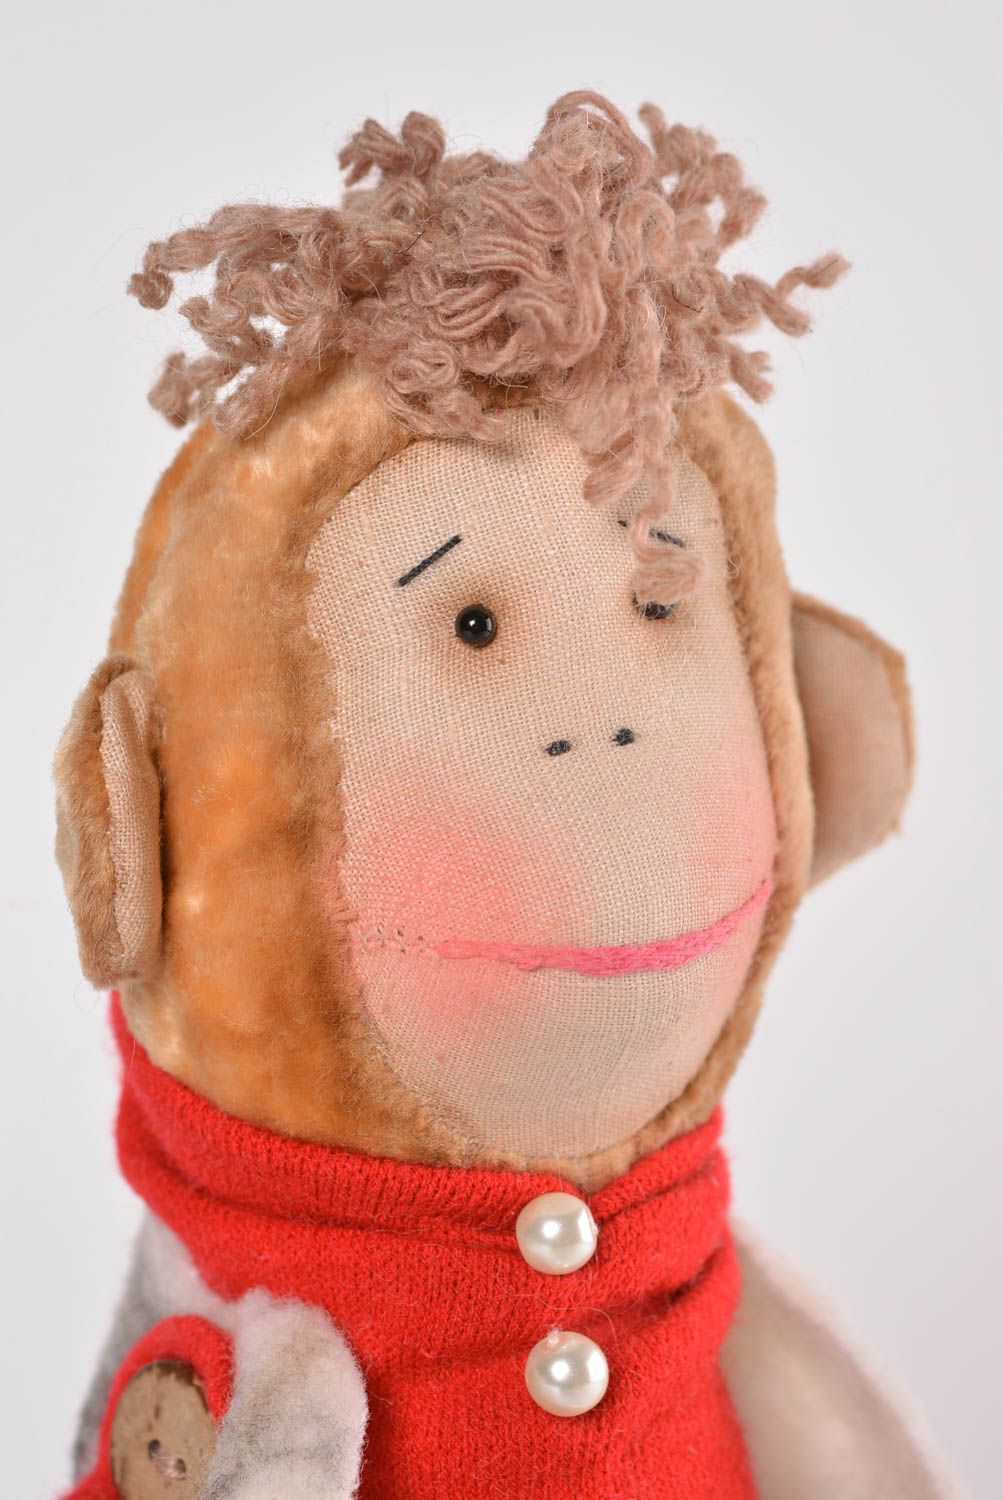 Peluche original hecho a mano juguete de tela cosido muñeco de trapo Mono foto 4